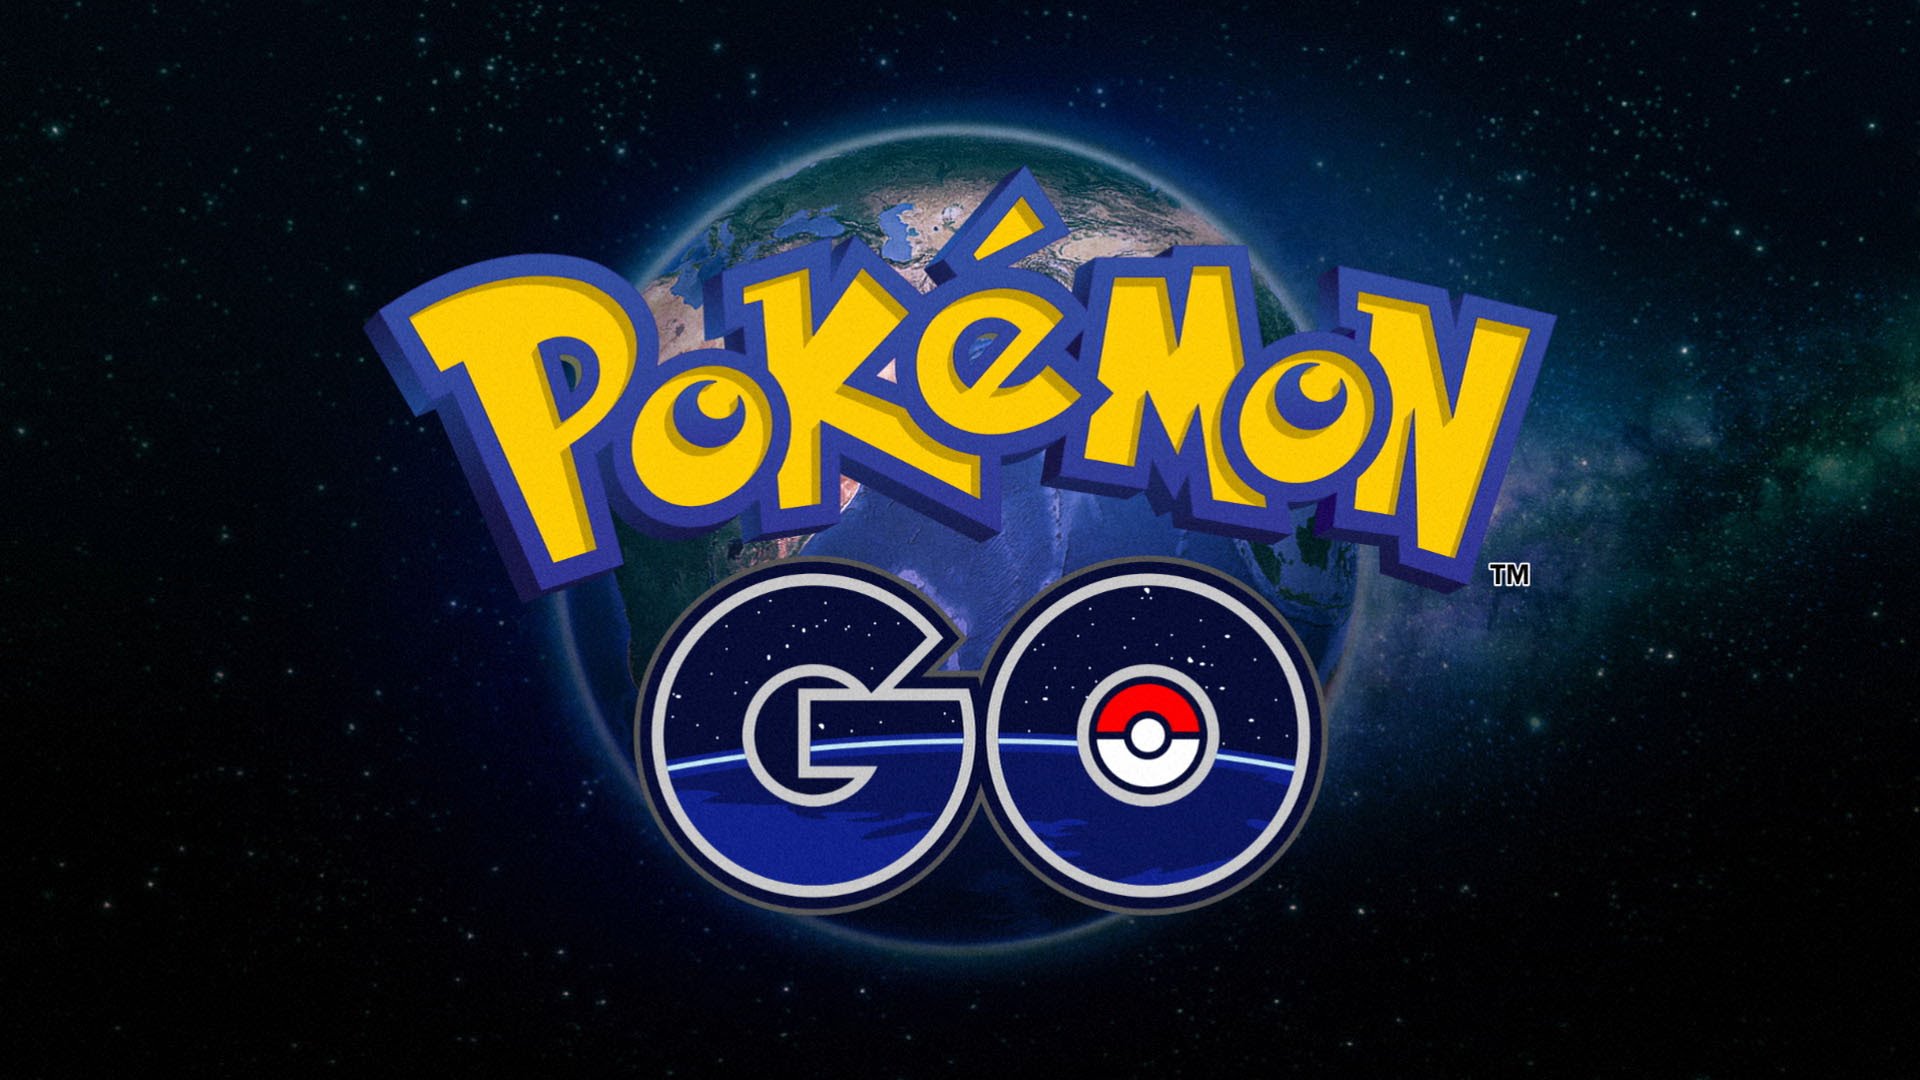 Pokémon Go downloaden nu al mogelijk door trucje